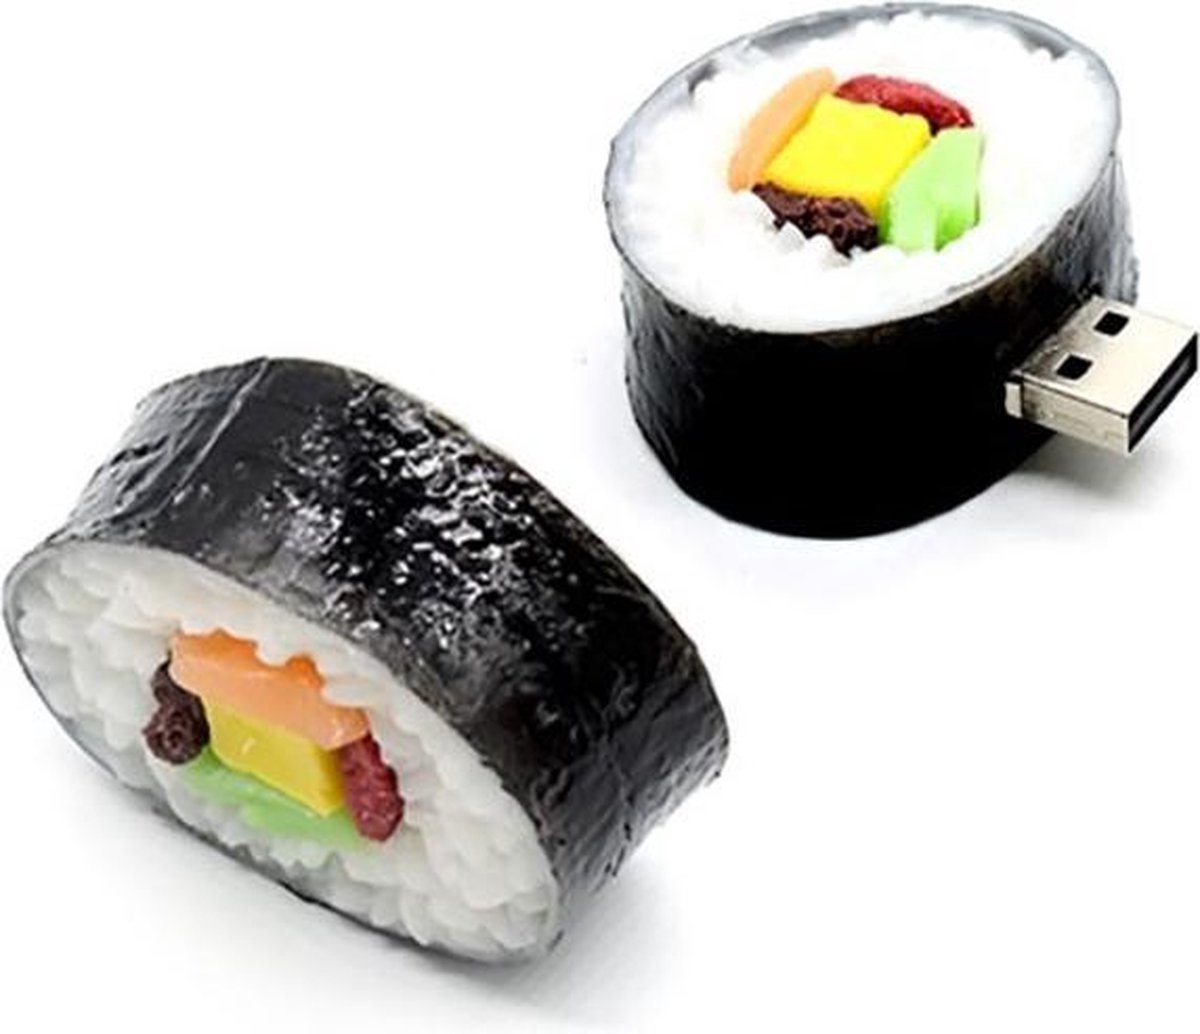 Sushi usb stick 128GB 3.0 -1 jaar garantie – A graden klasse chip